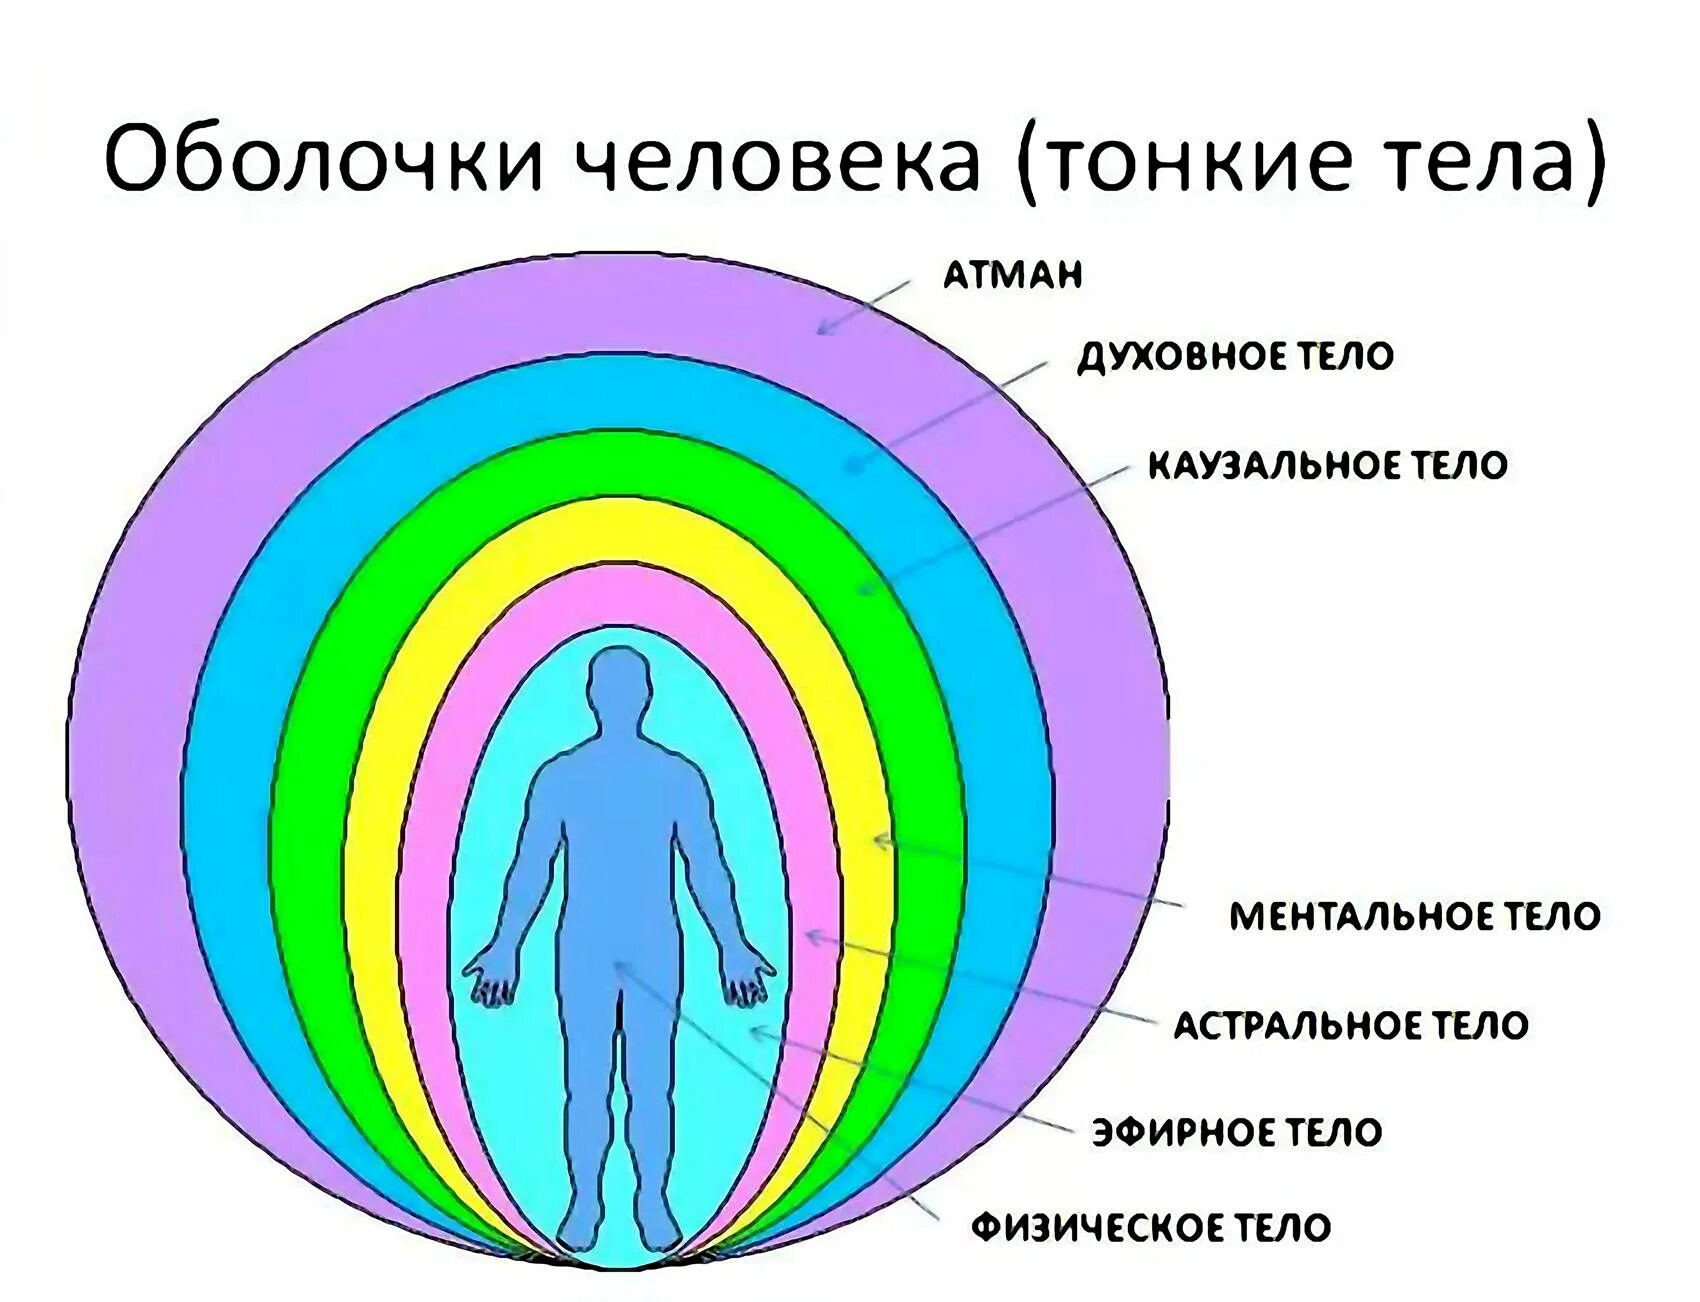 Название духовного. Аура энергетические тела человека. Структура тонких тел человека. Энергетическая оболочка человека. Схема тонких тел человека и их функции.